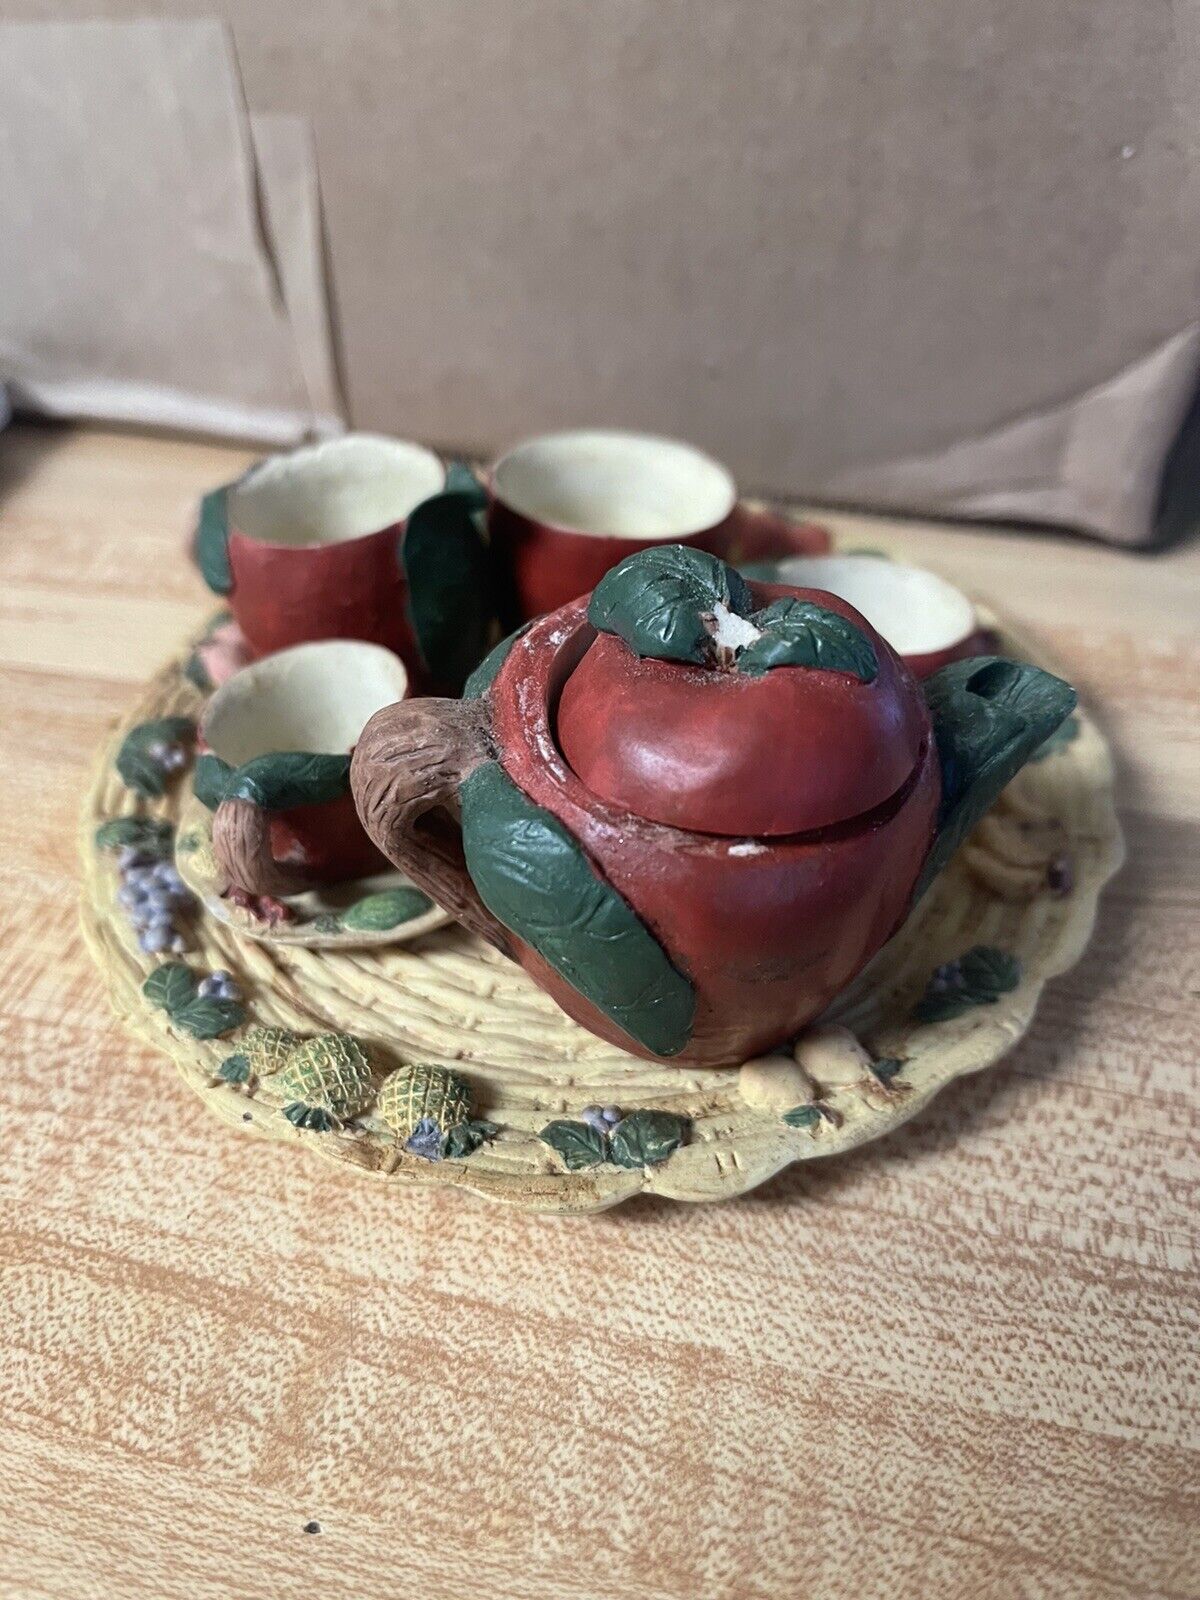 Miniature Apple Tea Set Vintage Fruit ArtMark? 9pcs Set MINI RARE Missing 1 Lid